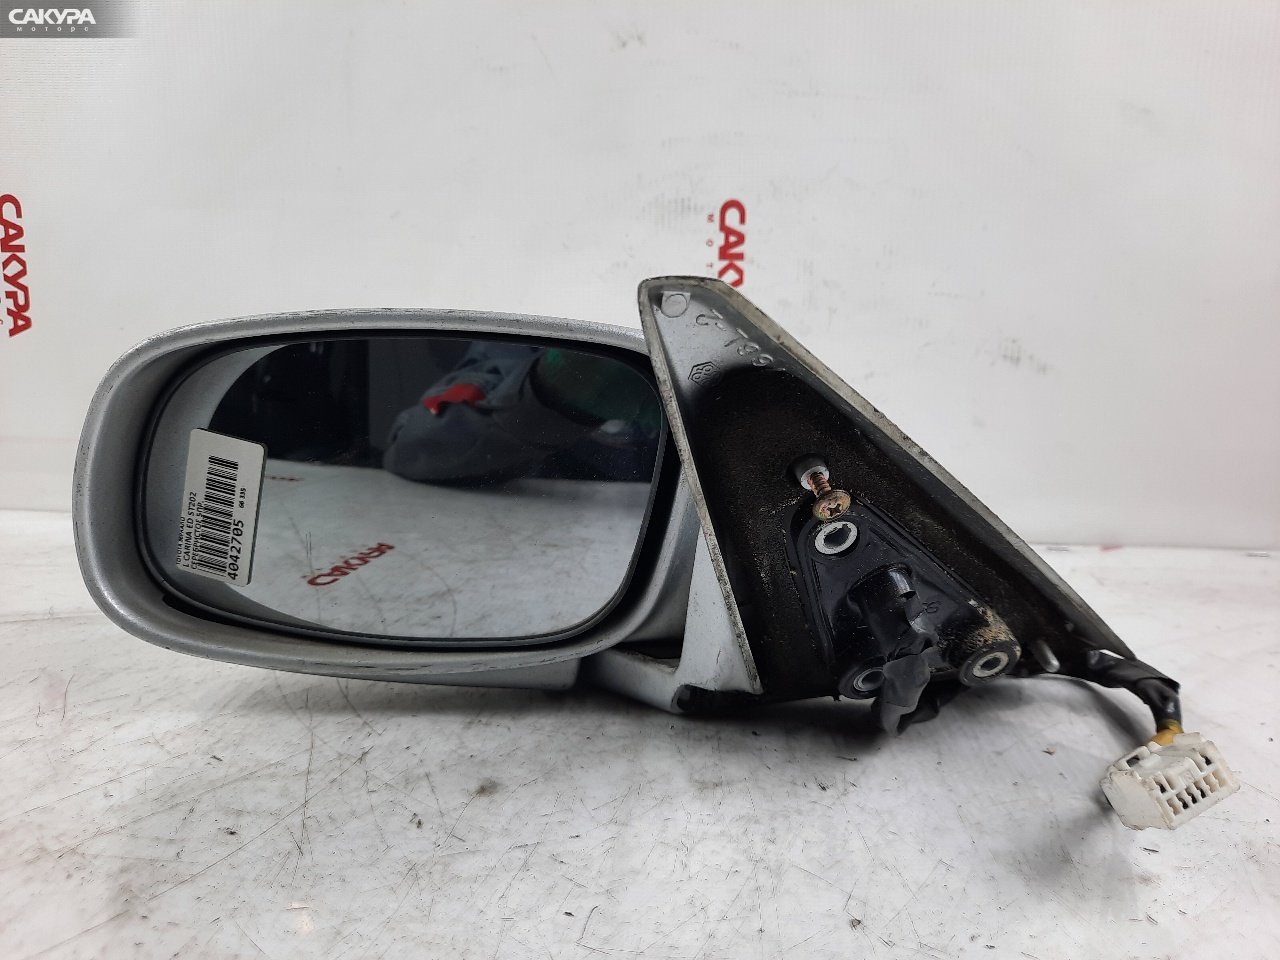 Зеркало боковое левое Toyota Carina ED ST202: купить в Сакура Красноярск.